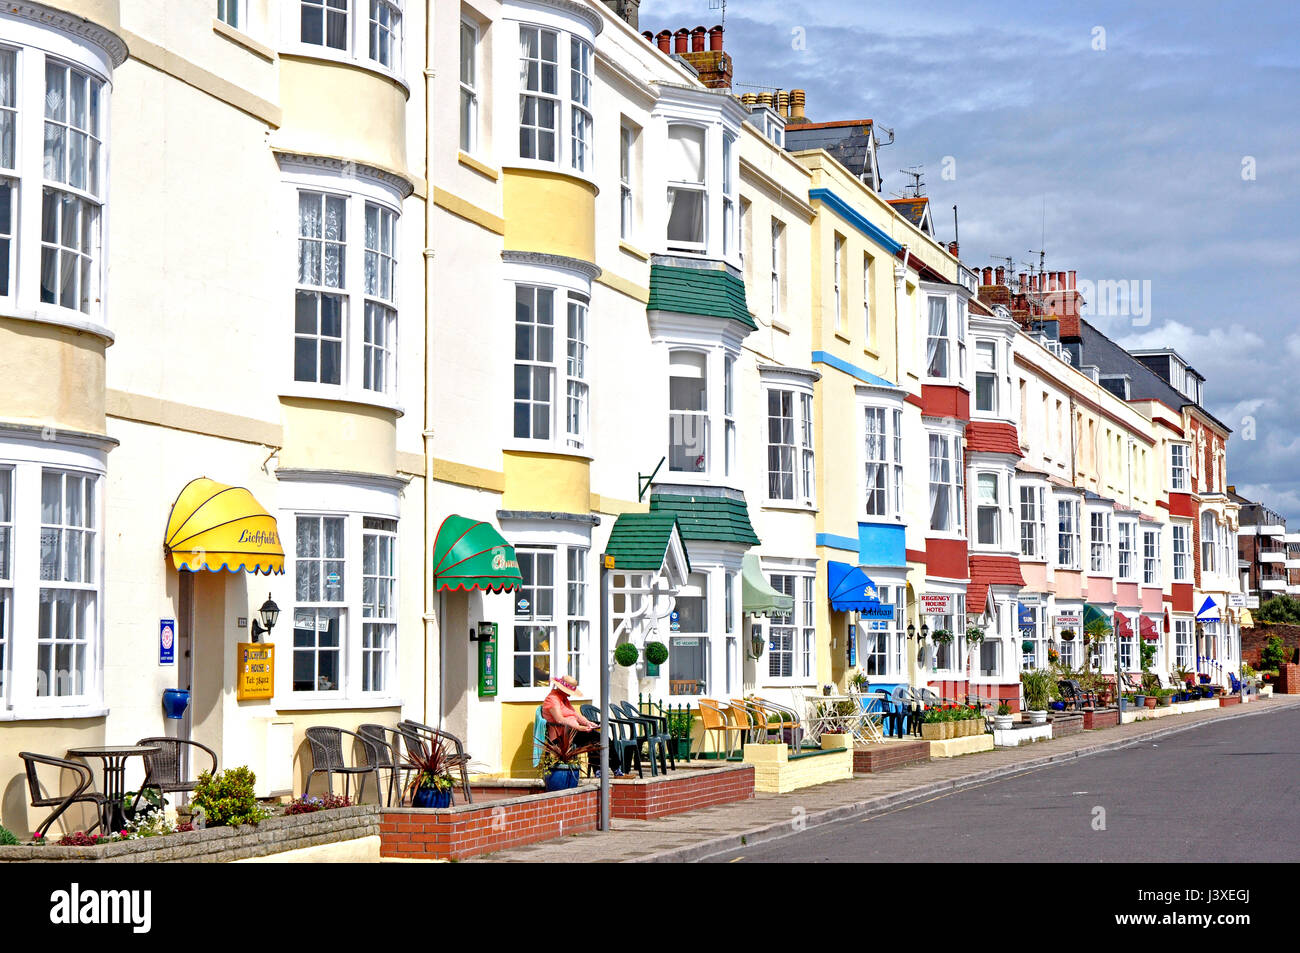 Georgische Periode Meer Hotels - Weymouth, Dorset weiß mit Pastell farbigen Bogen Fenster - Tür-Vordächer - Stühle für die Bewohner - Sonnenschein, blauer Himmel Stockfoto